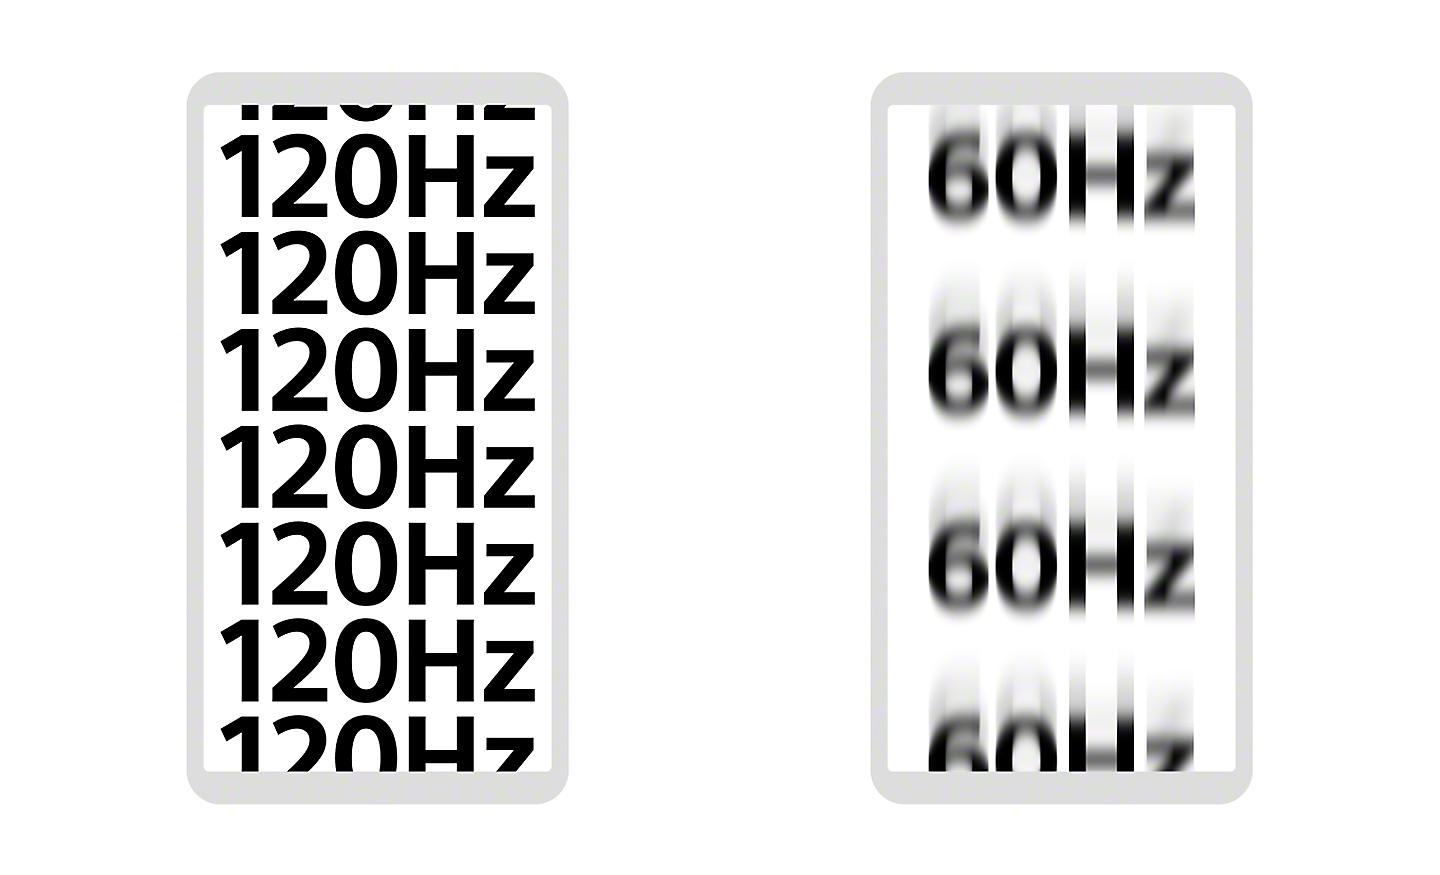 Afbeelding van twee smartphones: De ene geeft meerdere keren "120Hz" weer in scherp gedefinieerde tekst, de andere toont '60 Hz' in wazige tekst